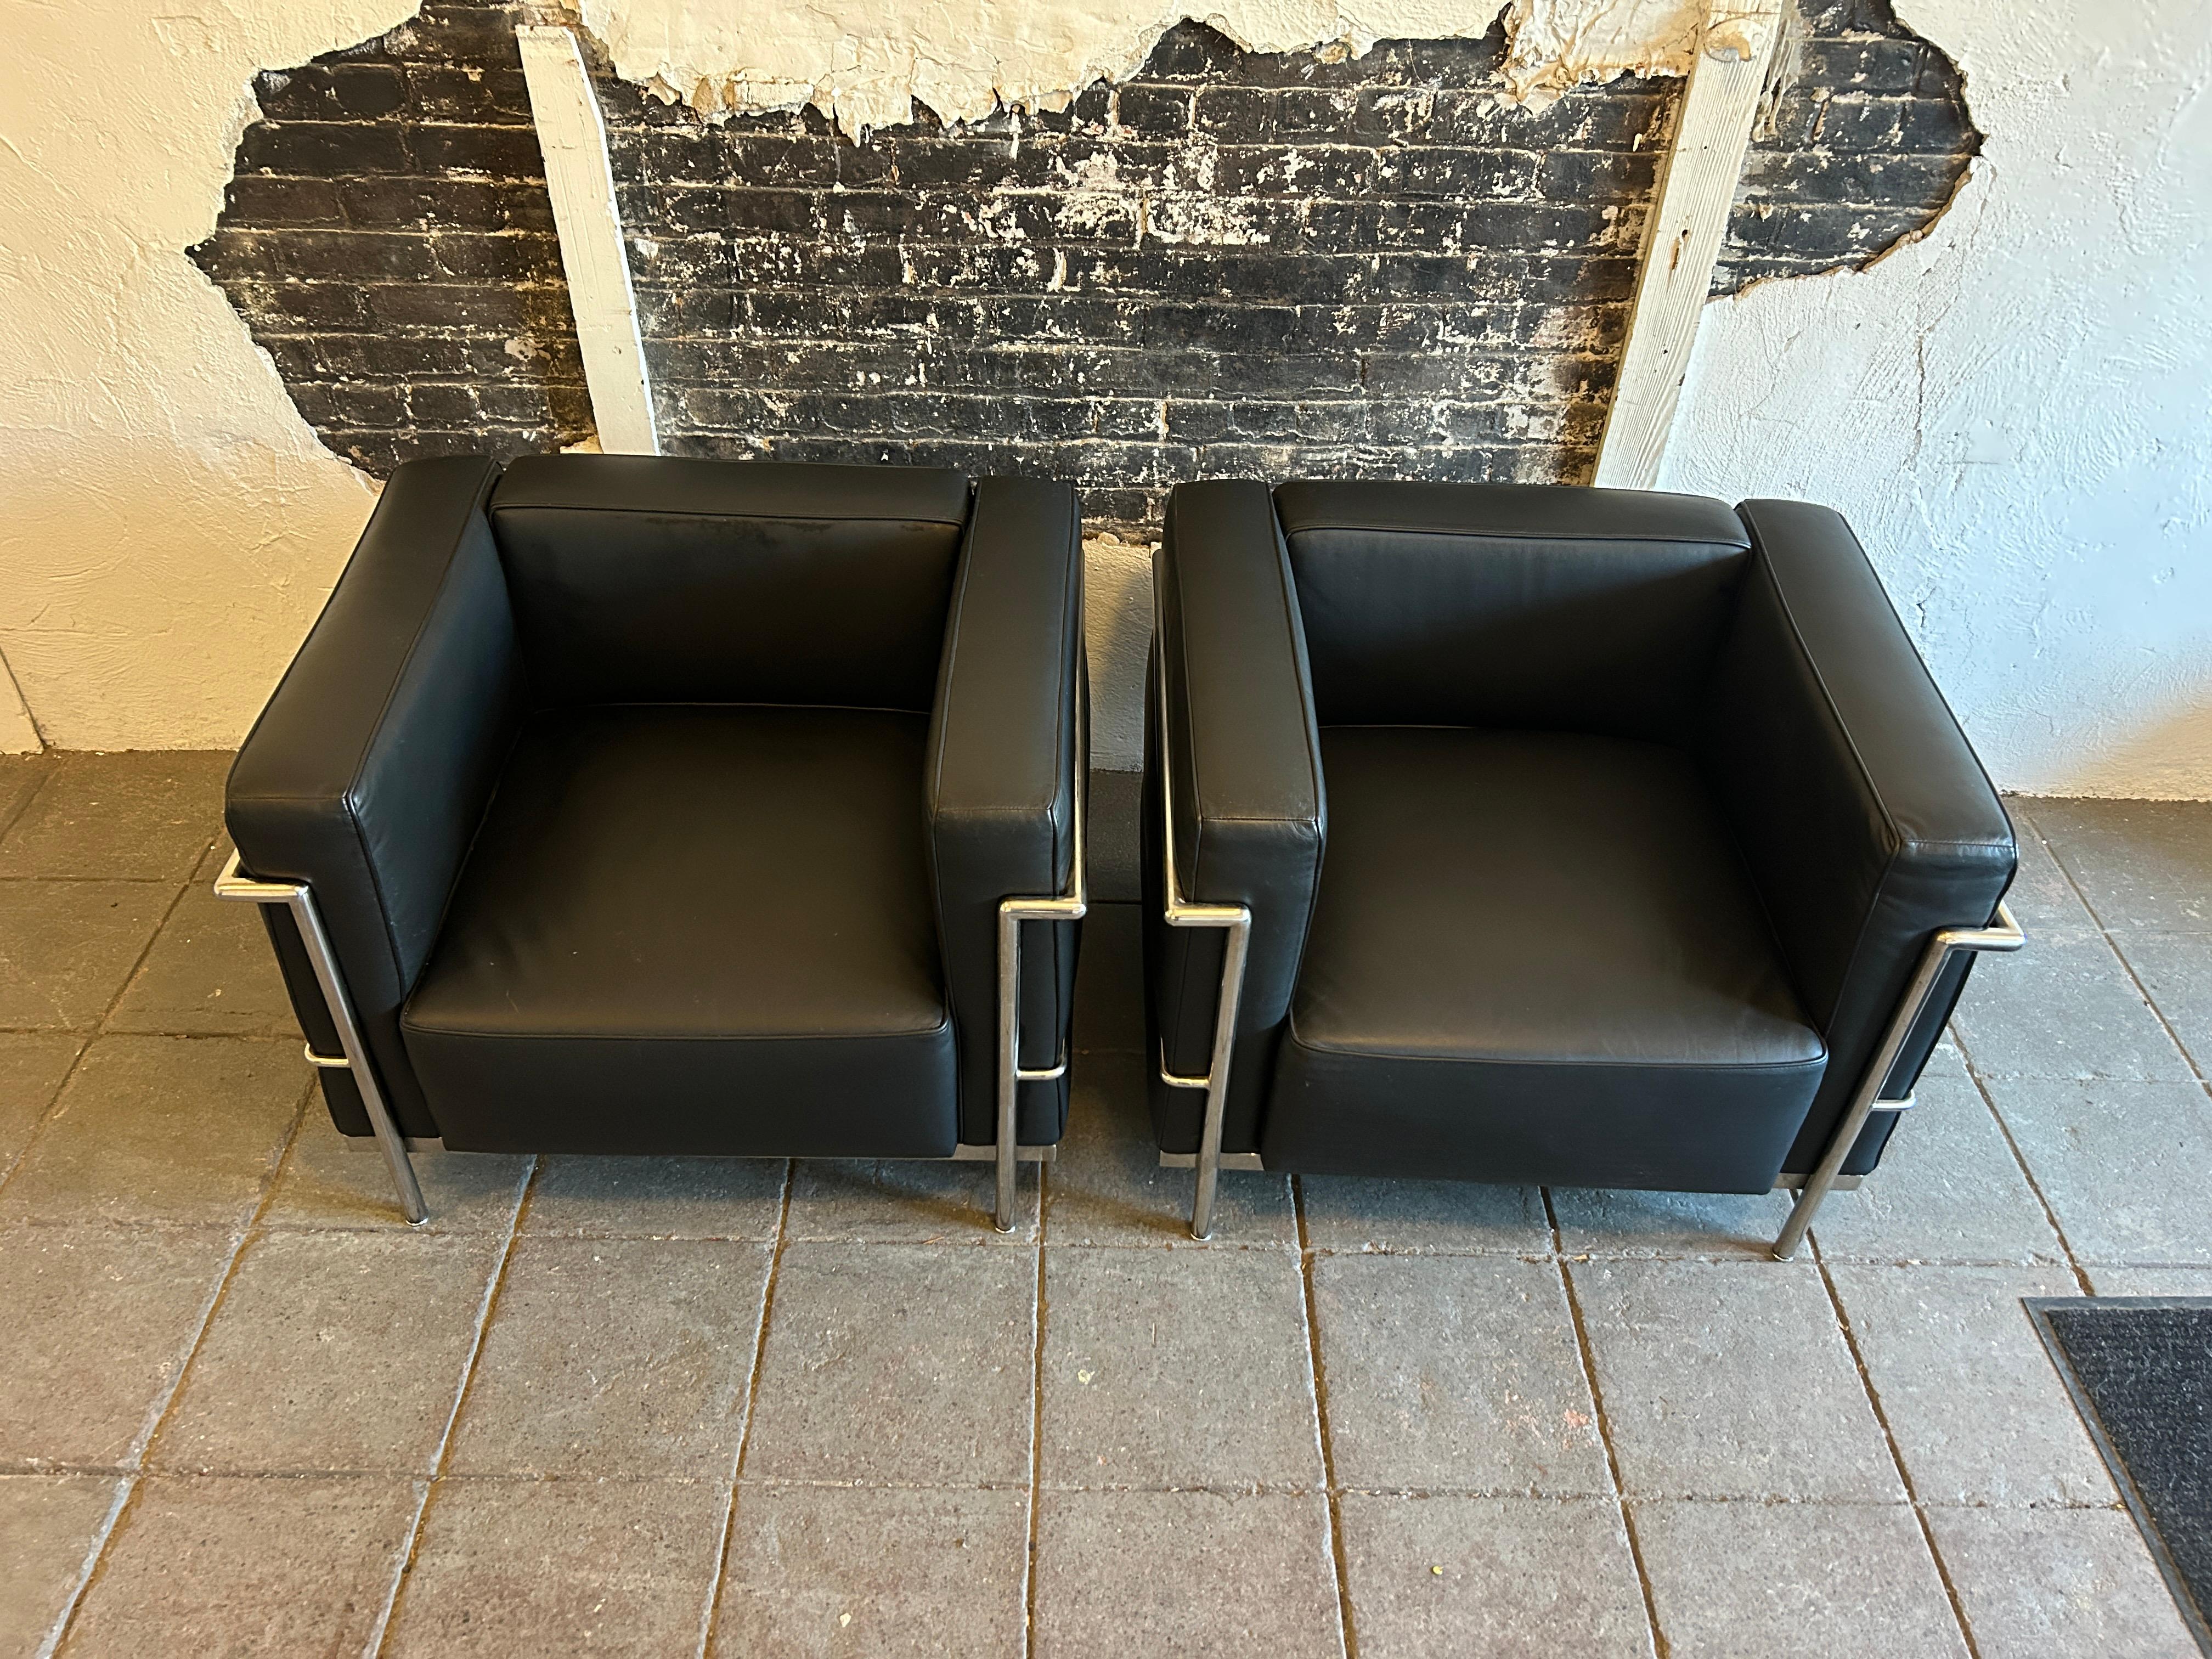 Ein Paar moderne Lounge- oder Clubsessel von Le Corbusier aus Vorbesitz. Breites Modell LC3 in weichem schwarzen Leder. Dreifach verchromte Stahlrahmen. Sie weisen wenig bis keine Gebrauchsspuren auf. Hergestellt in Italien. Das Hotel liegt in